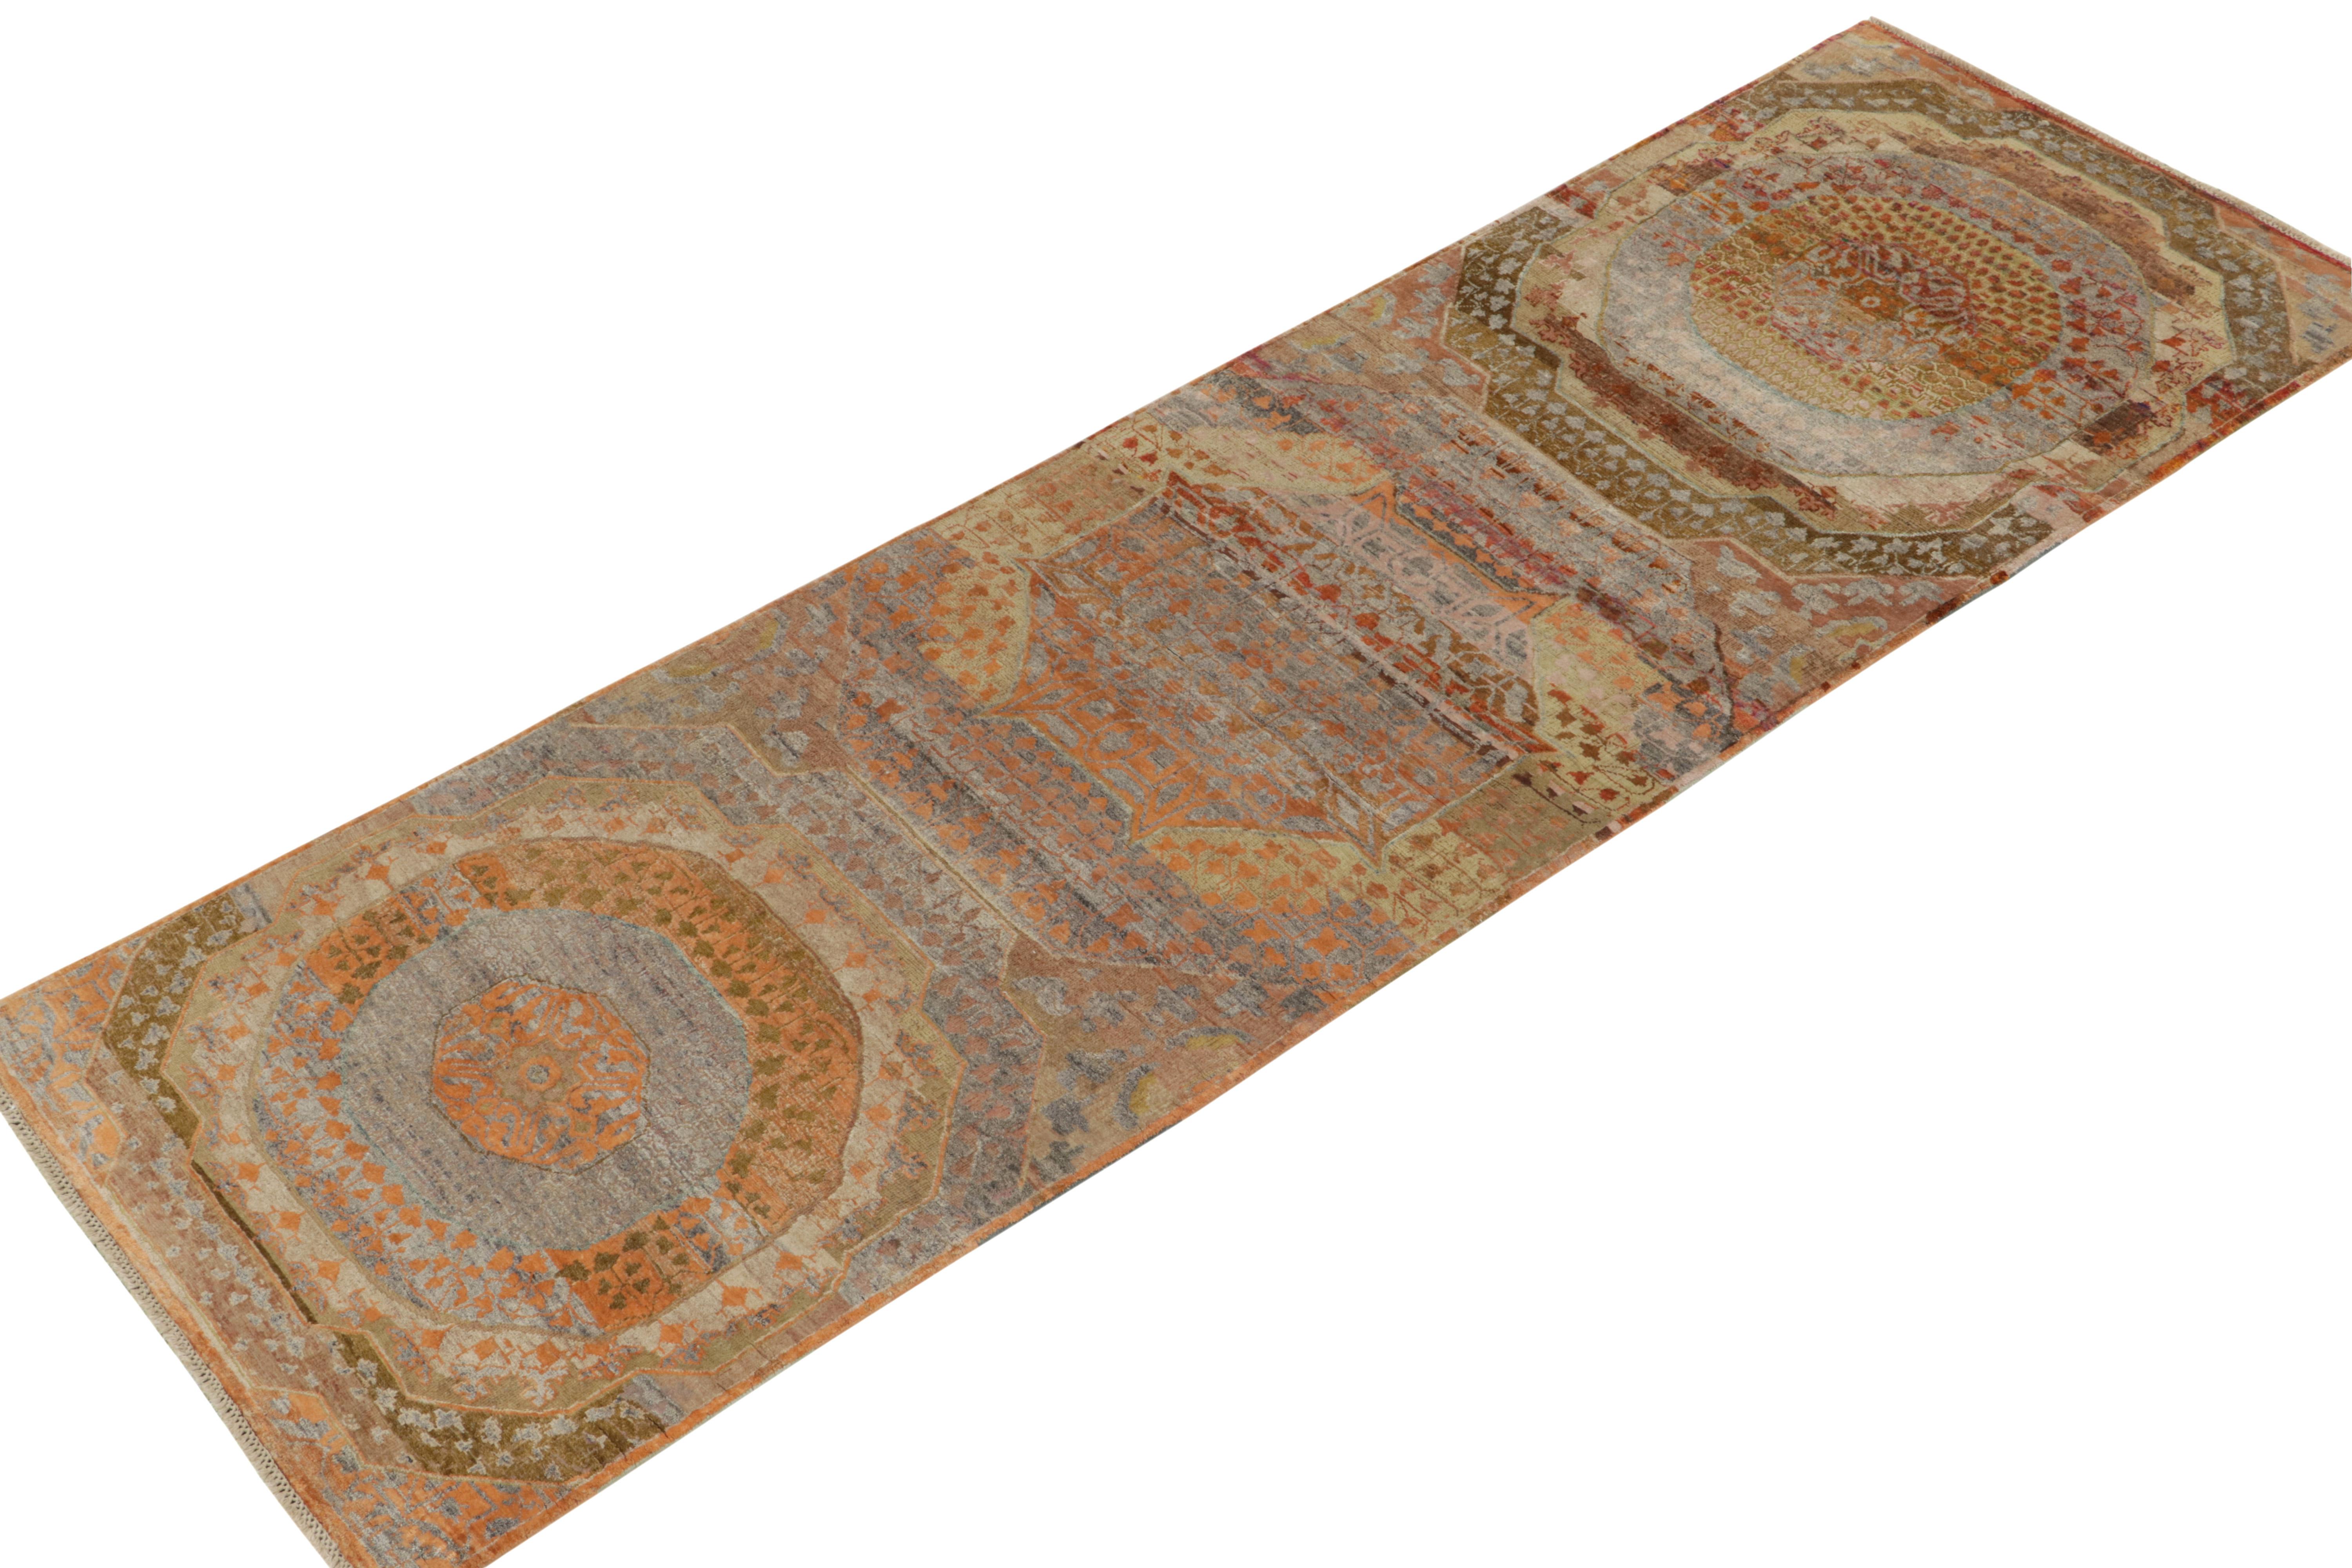 Noué à la main dans un fin mélange de laine et de soie luxueuses, ce chemin de table 3x10 est issu de la collection Modern Classics de Rug & Kilim.

Sur le design : S'inspirant subtilement d'Agra, ce tapis présente une répétition hexagonale avec des